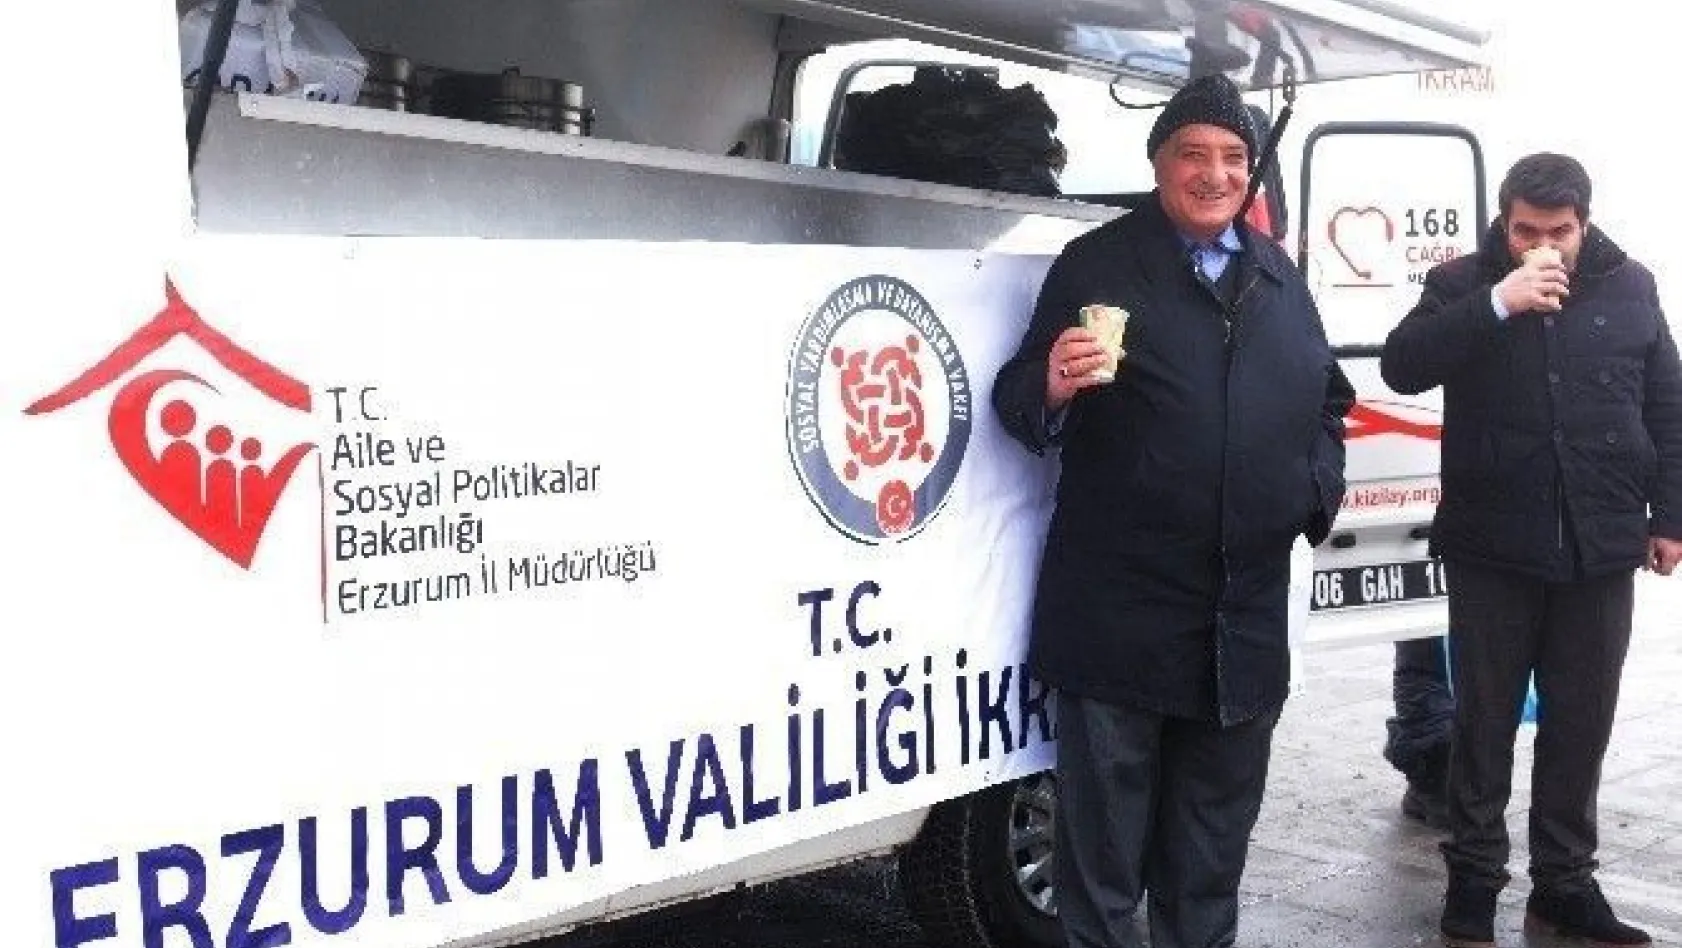 Erzurum Valiliğince vatandaşlara ücretsiz çorba dağıtılıyor
